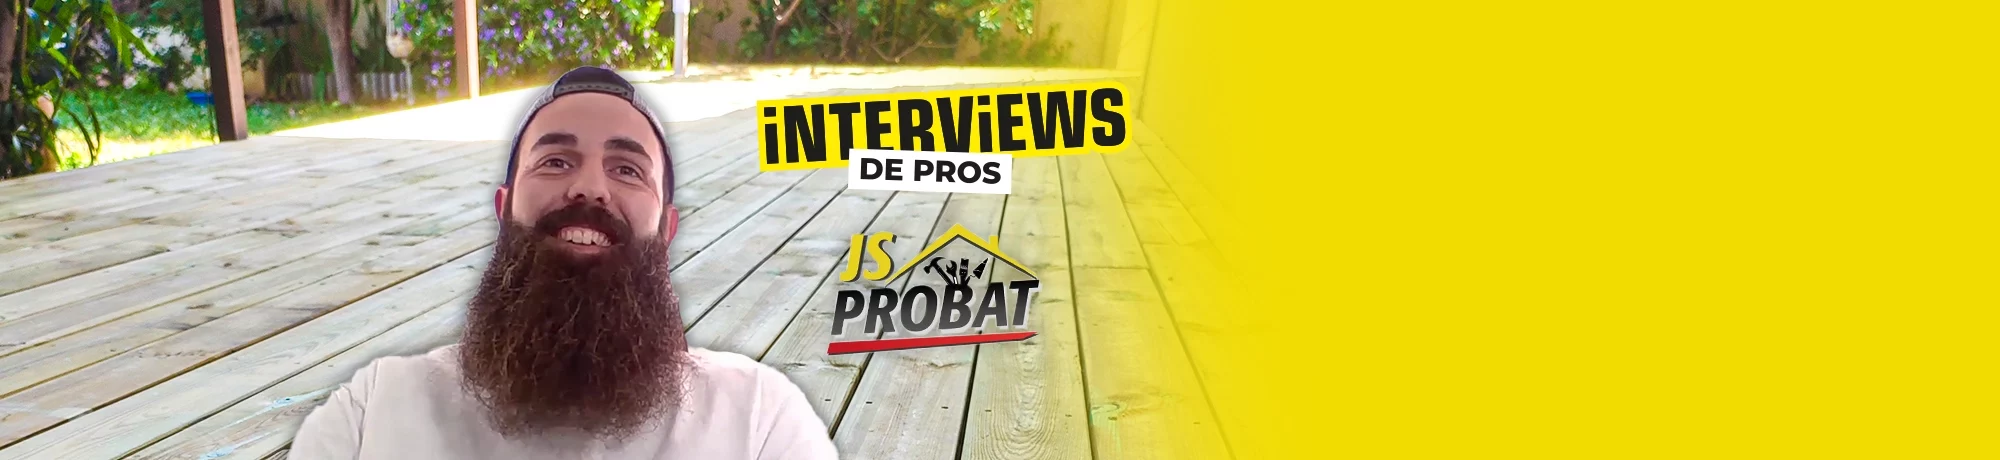 Interview-de-pros-JSPROBAT-starblock